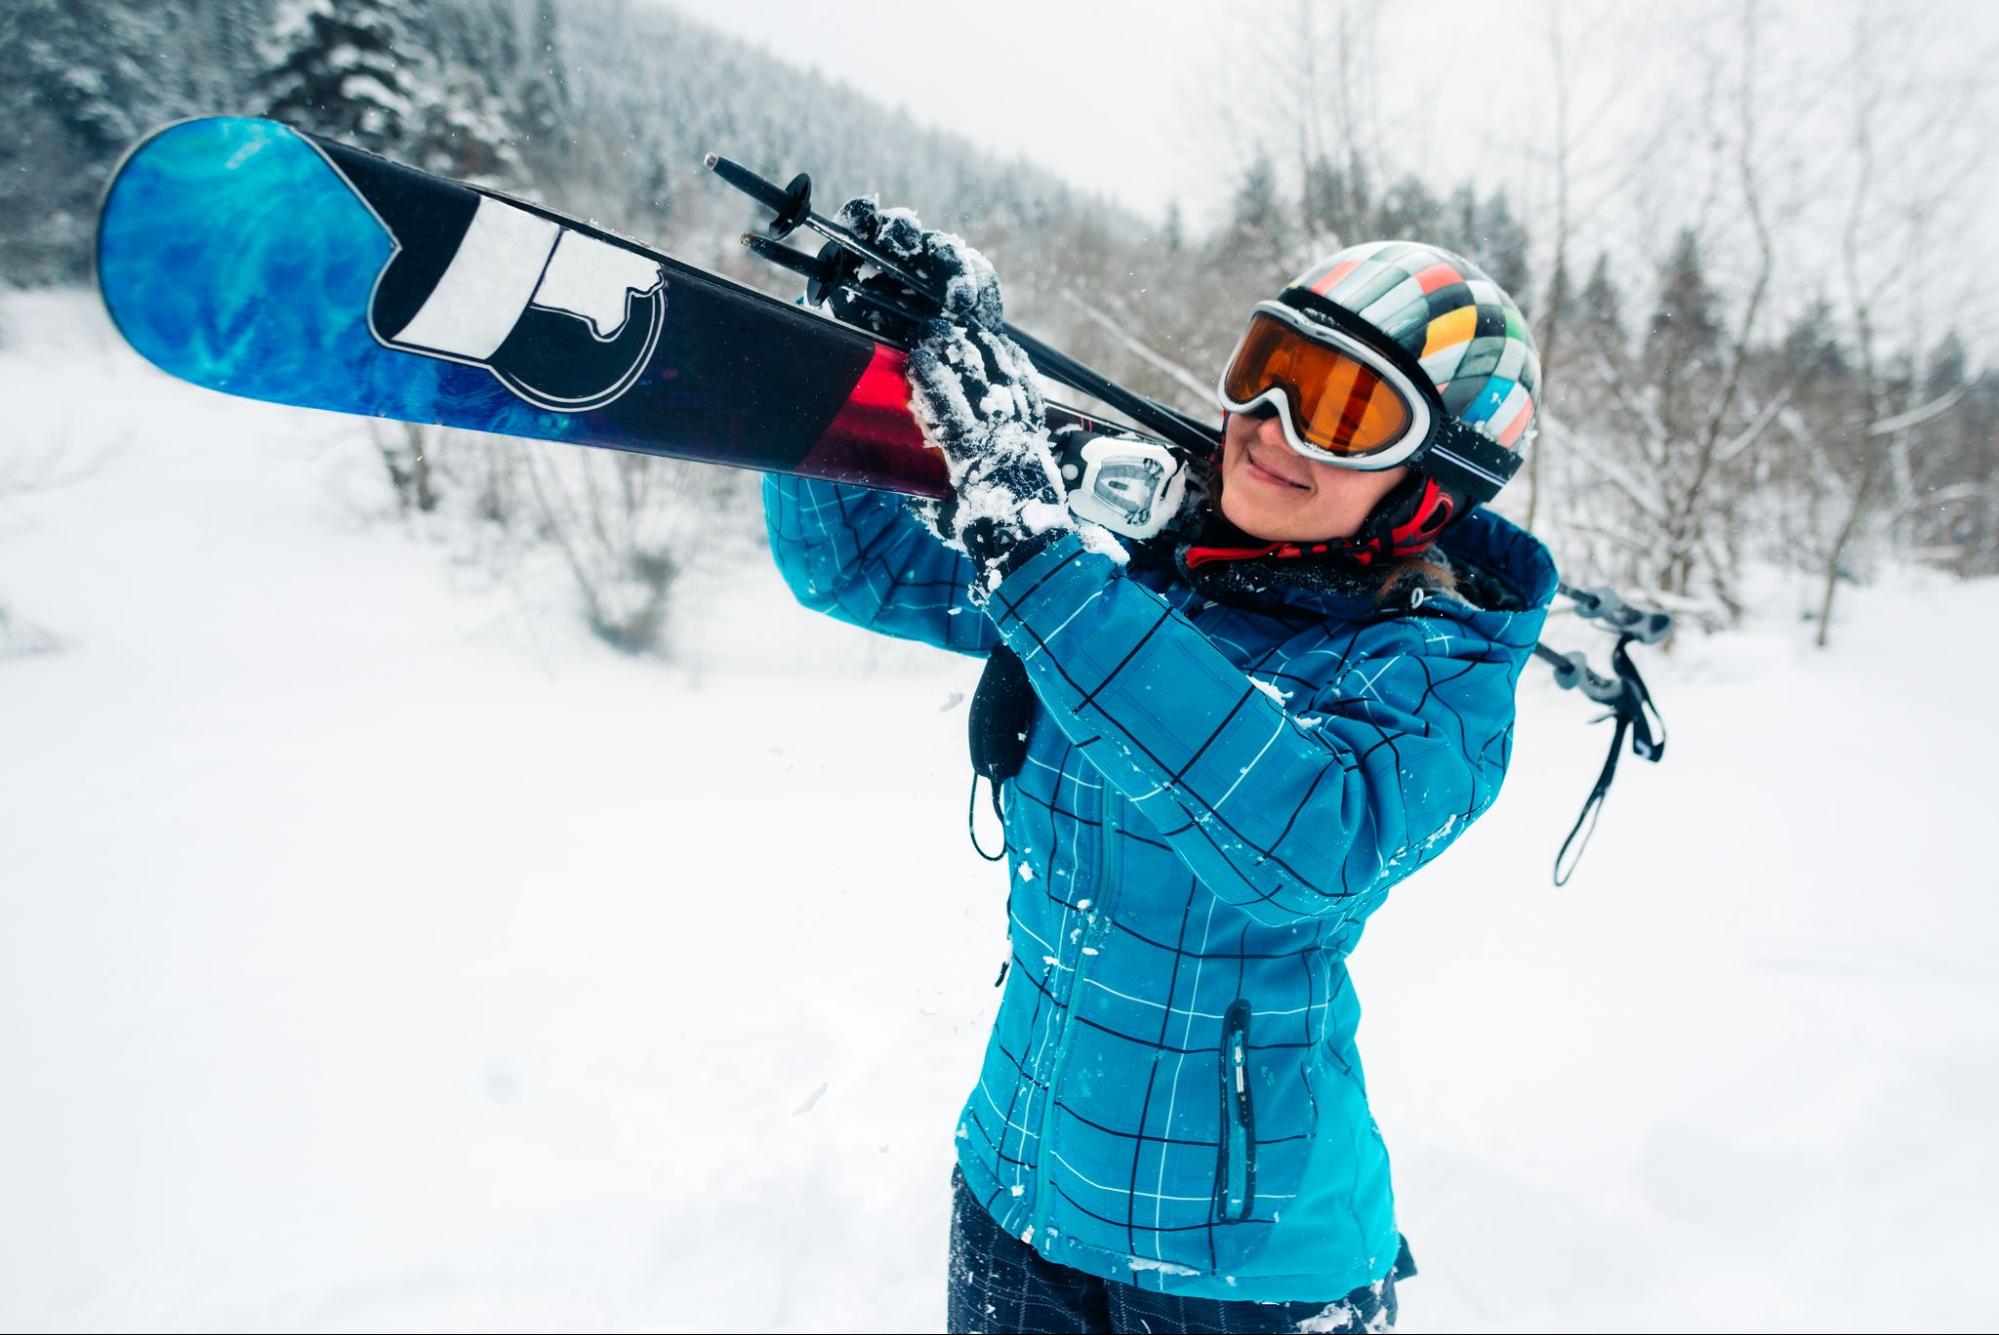 Pantalones de esquí: consejos para elegir los adecuados - La